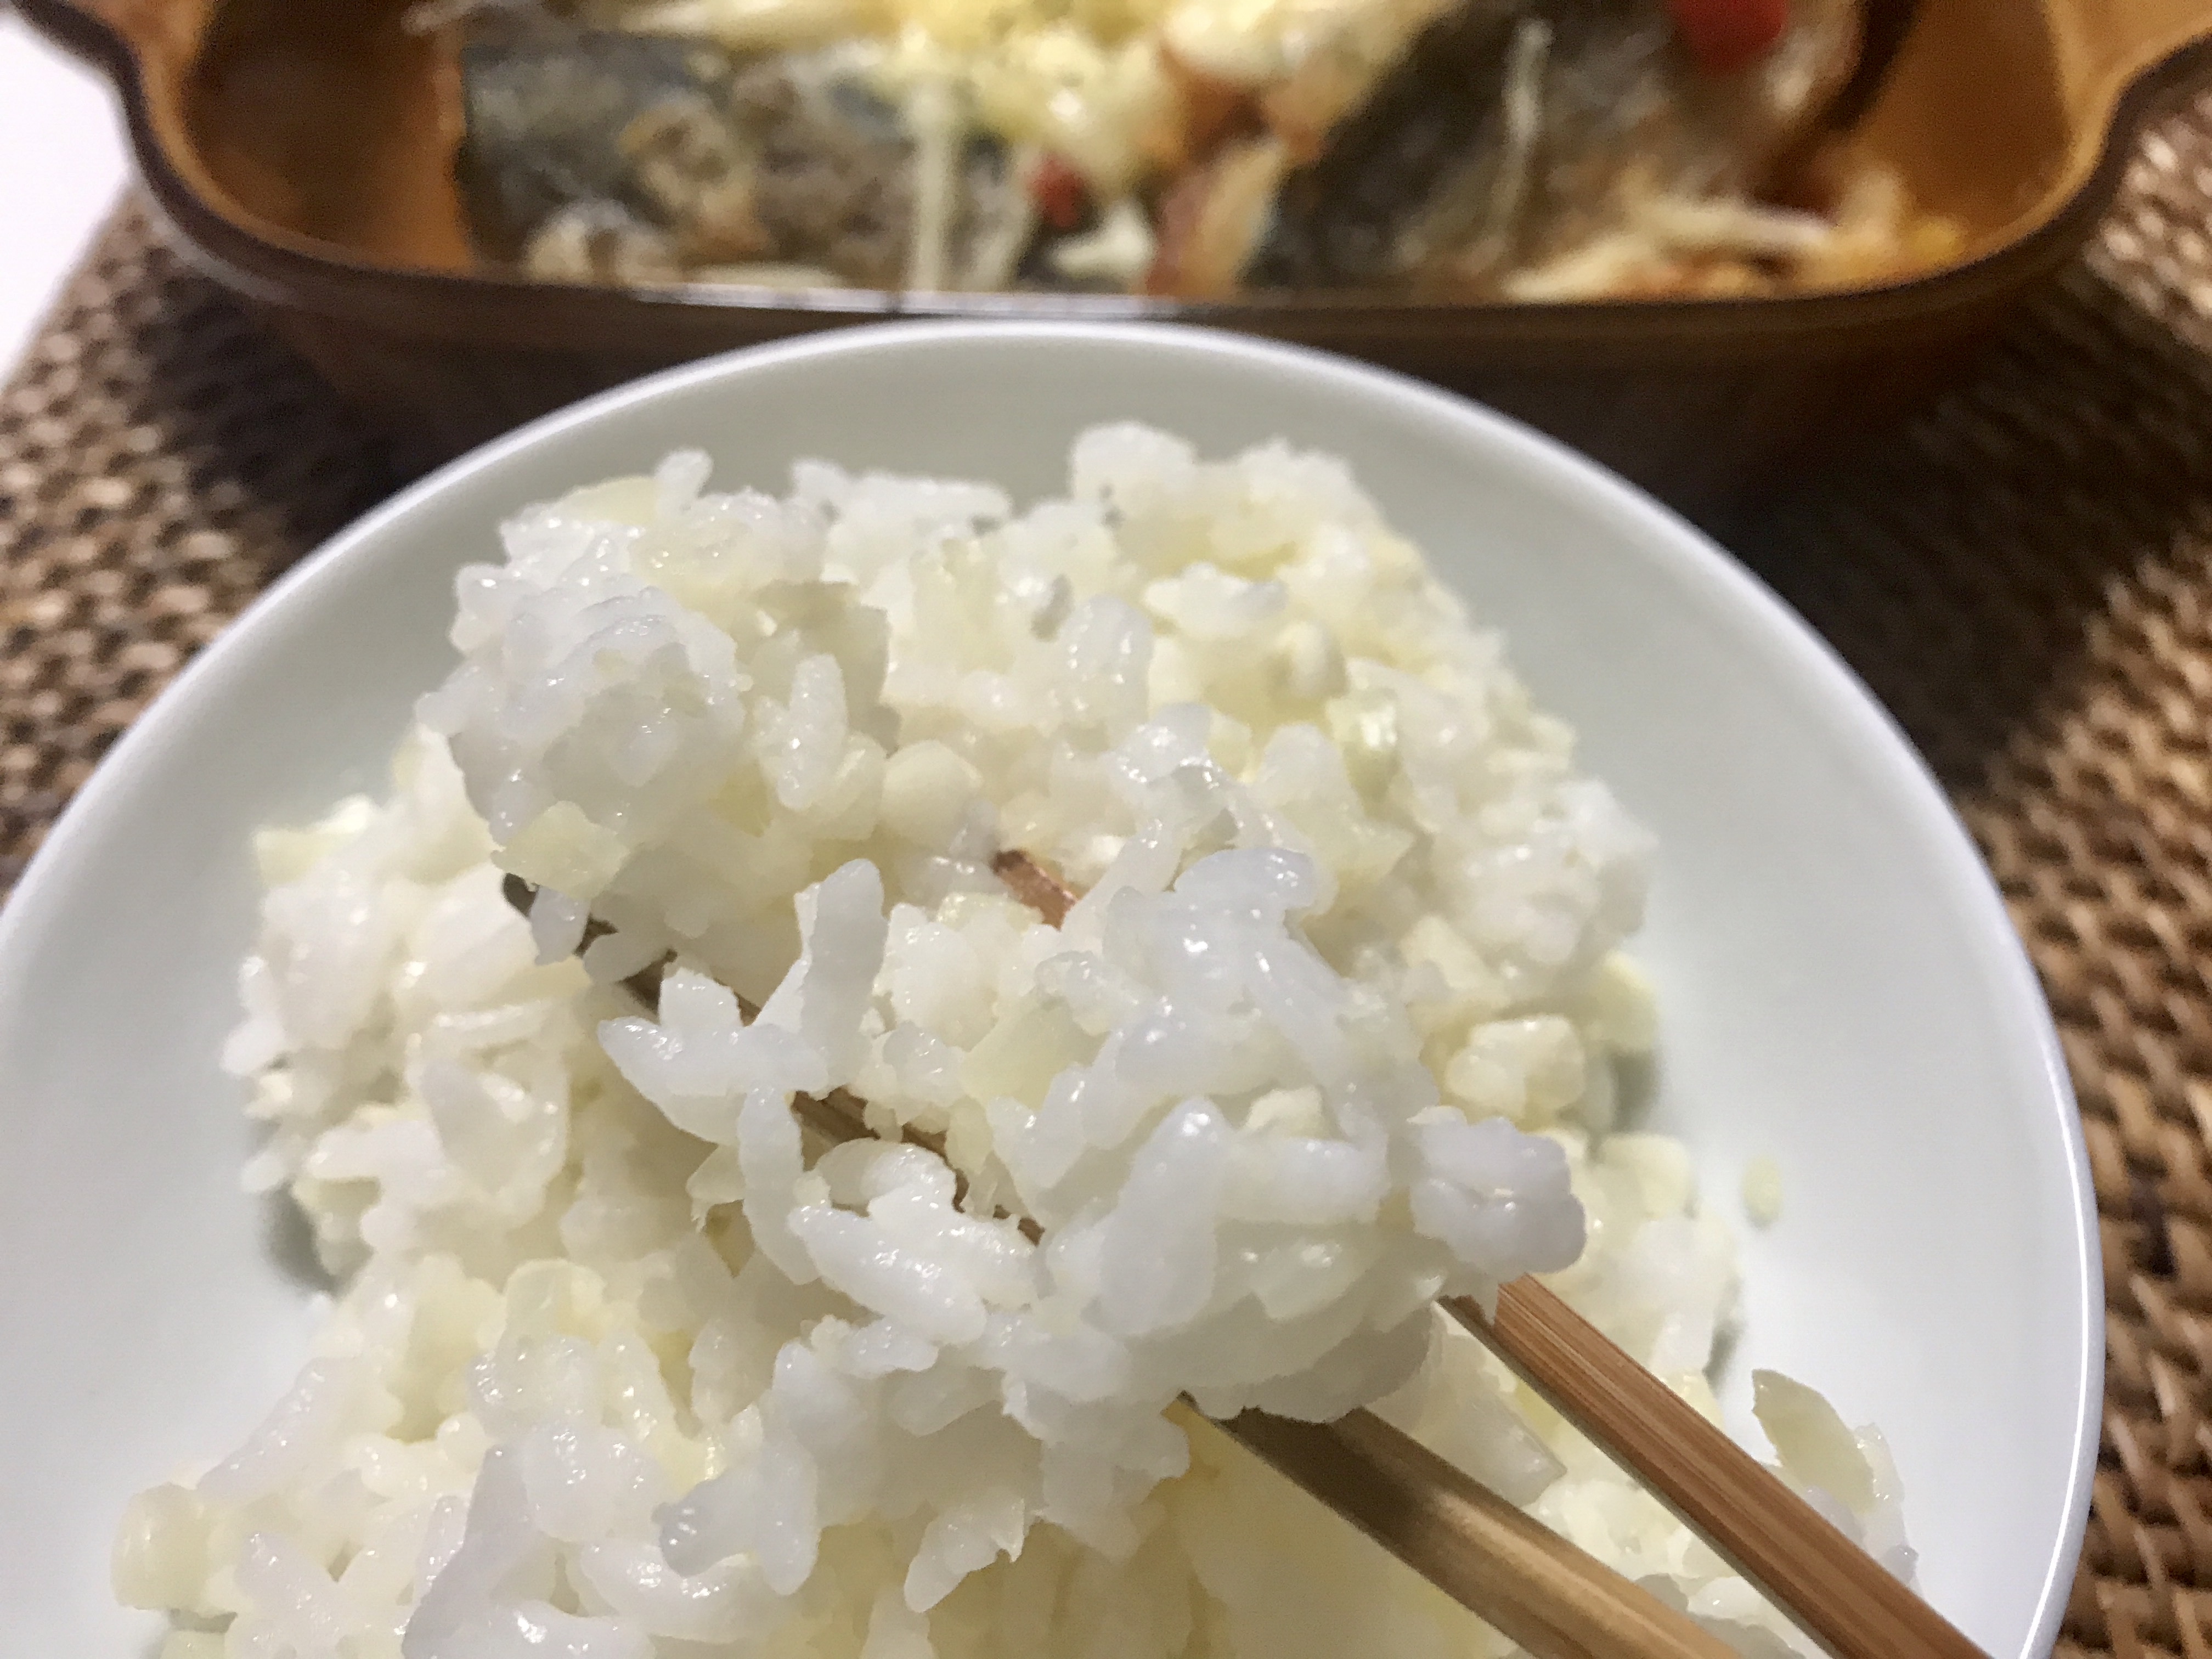 カリフラワーライス はお米の代わりになり家庭の食卓に取り入れられるのか ご飯に混ぜて3日間お試し まごころ365